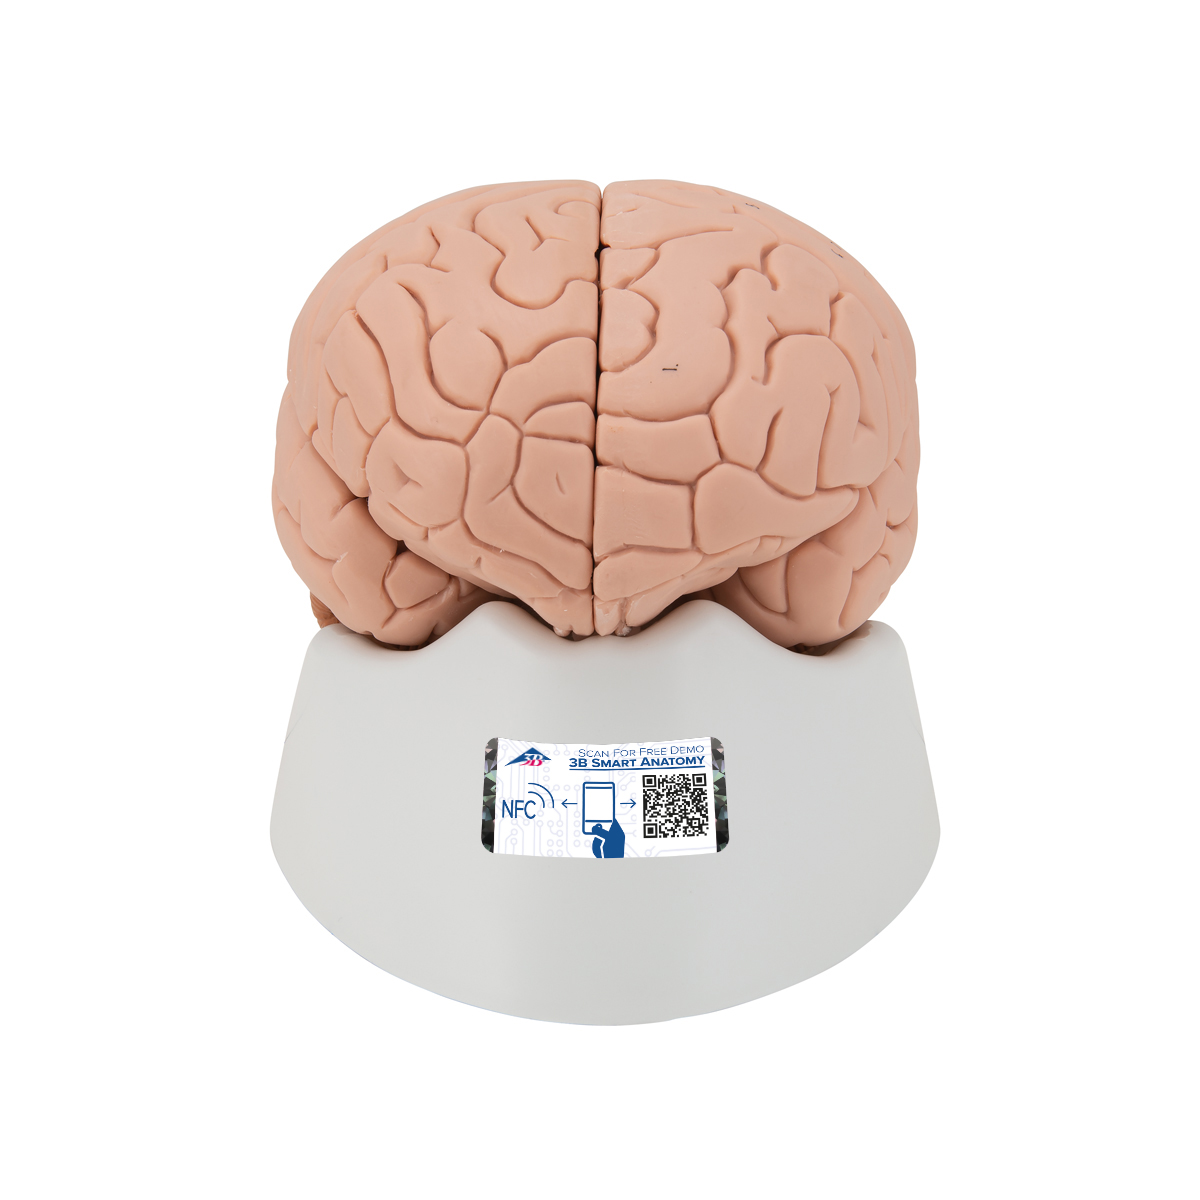 Menschliches Gehirnmodell, 2-teilig - 3B Smart Anatomy, Bestellnummer 1000222, C15, 3B Scientific